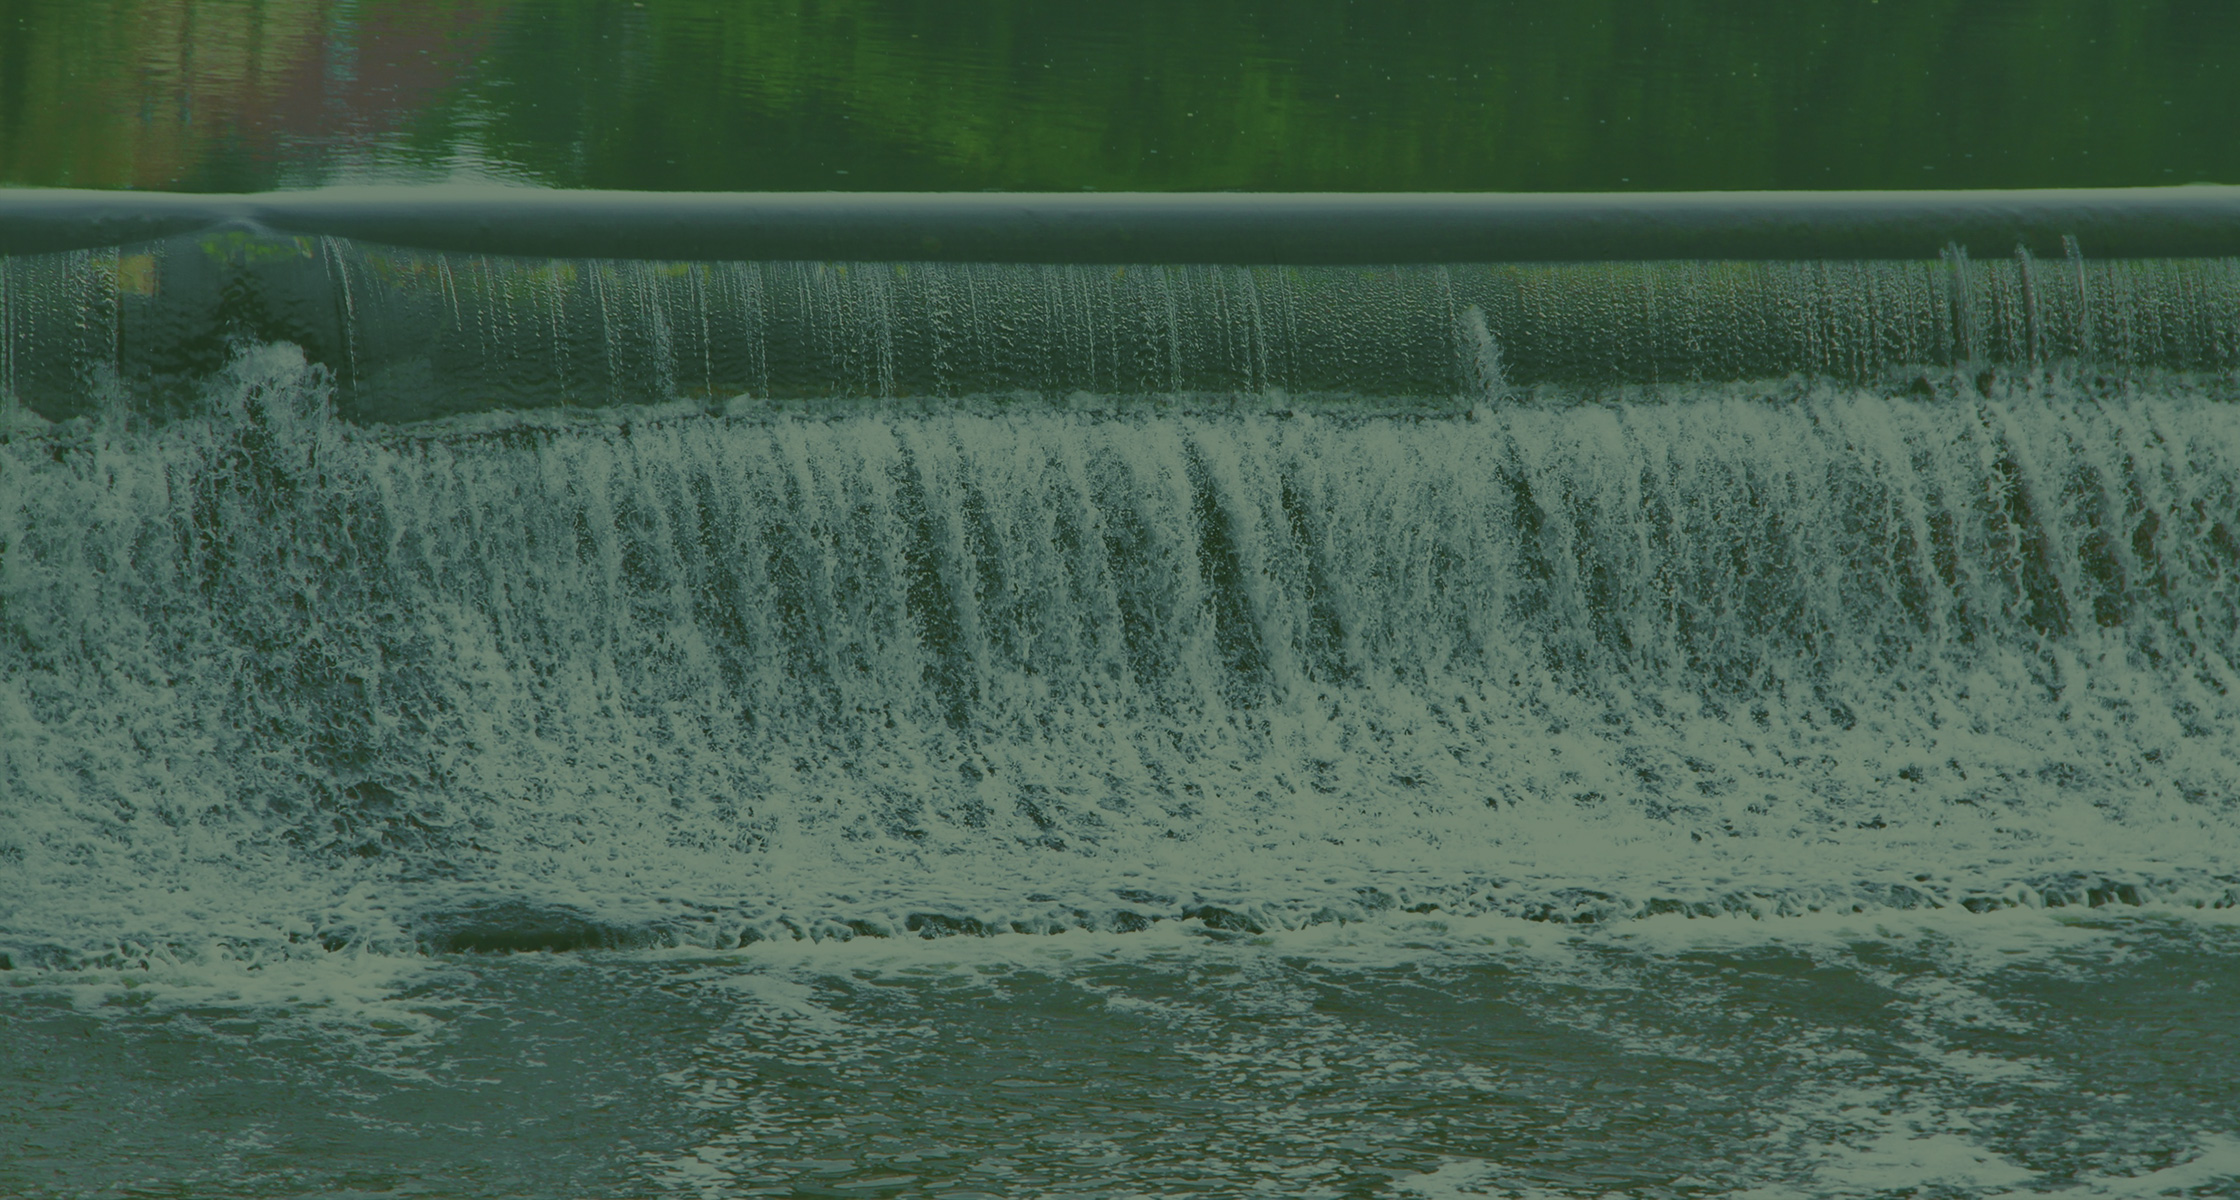 Rein dekoratives Element. Zu sehen ist eine sich bewegende Wassermasse, welche an einem Staudamm nach unten prescht. Das Bild hat insgesamt ein grünes Overlay aus gestalterischen Zwecken.